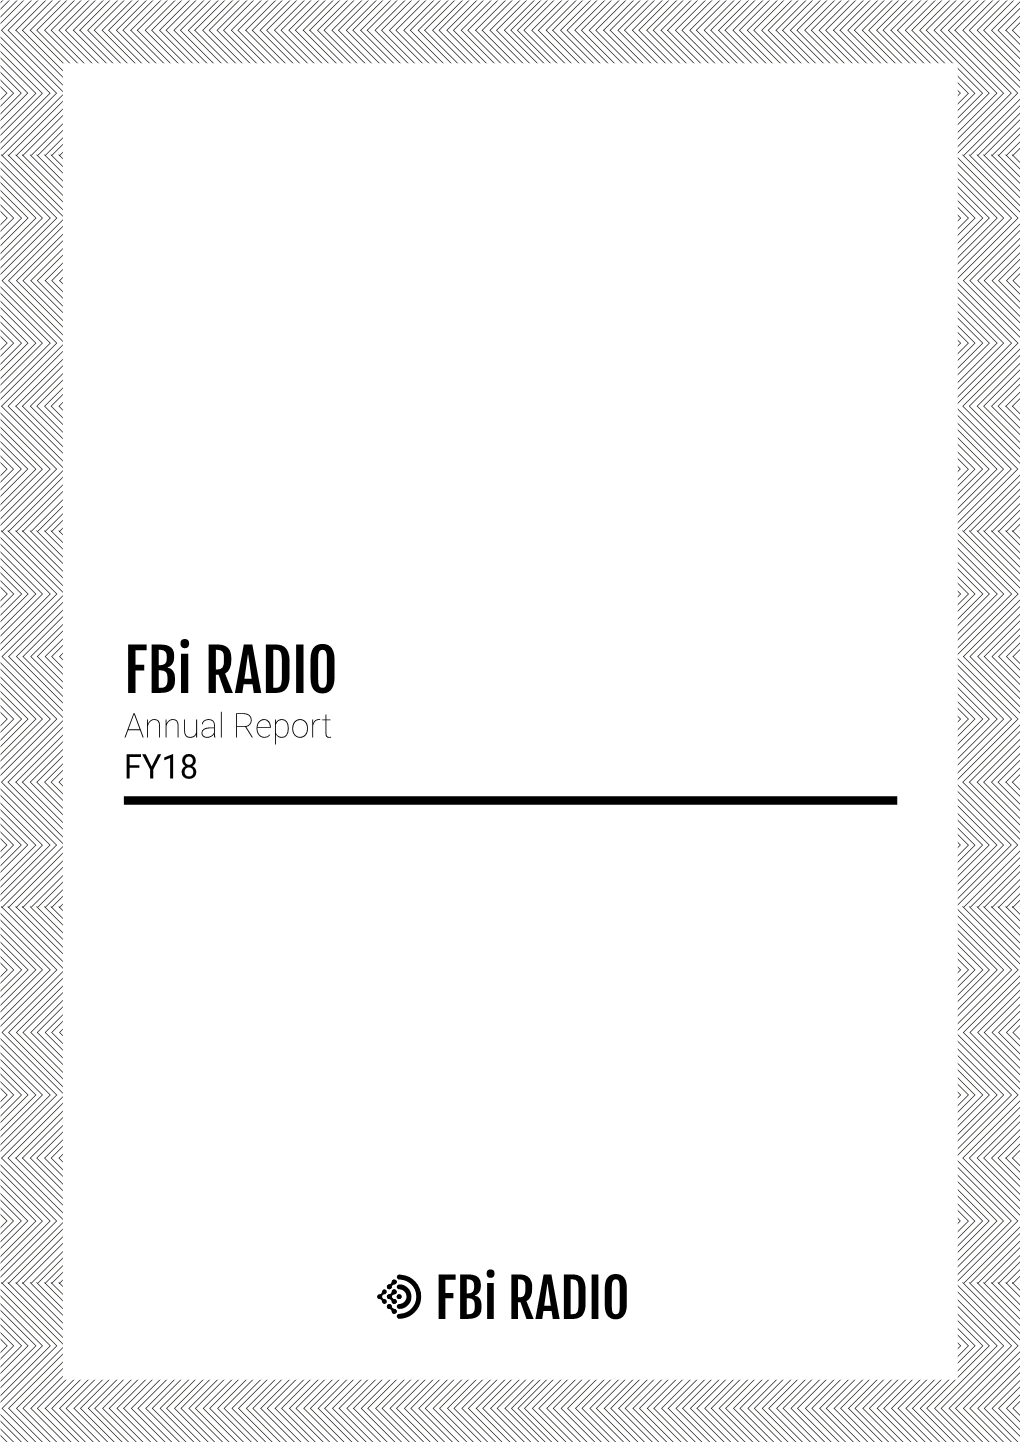 Fbi RADIO Annual Report FY18 CONTENTS